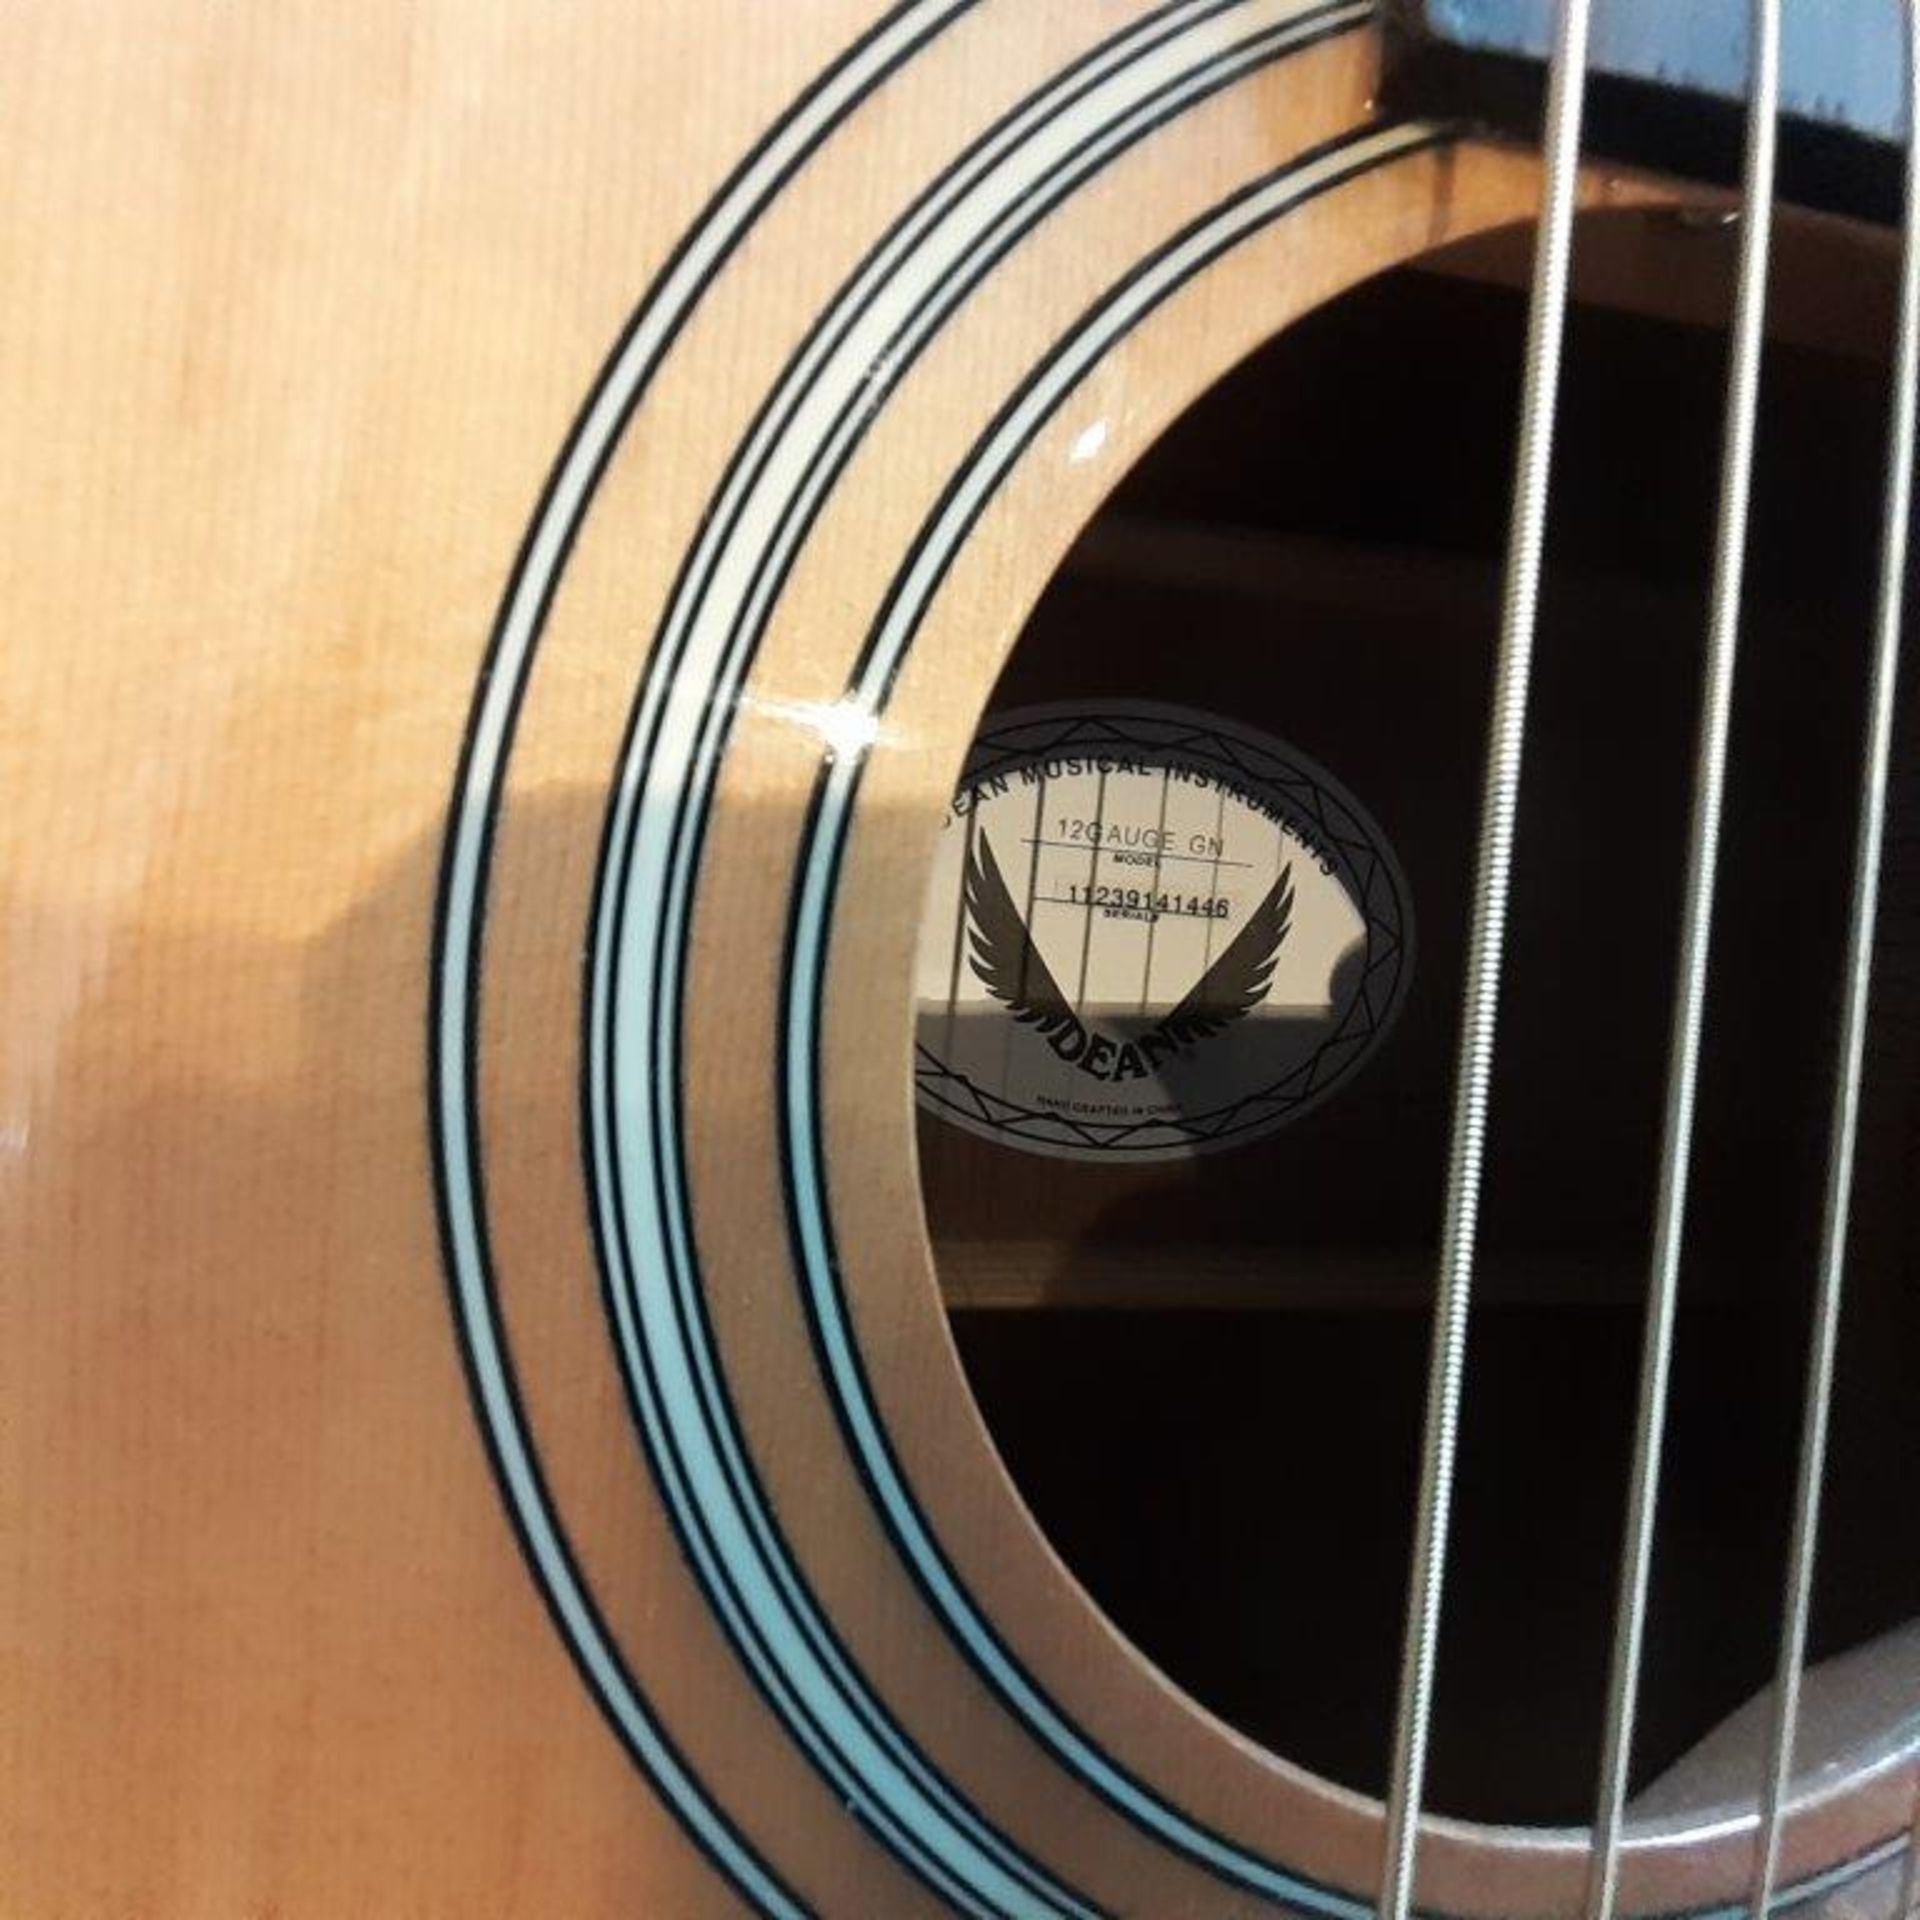 DEAN Guitar (details via photos) - Image 4 of 5